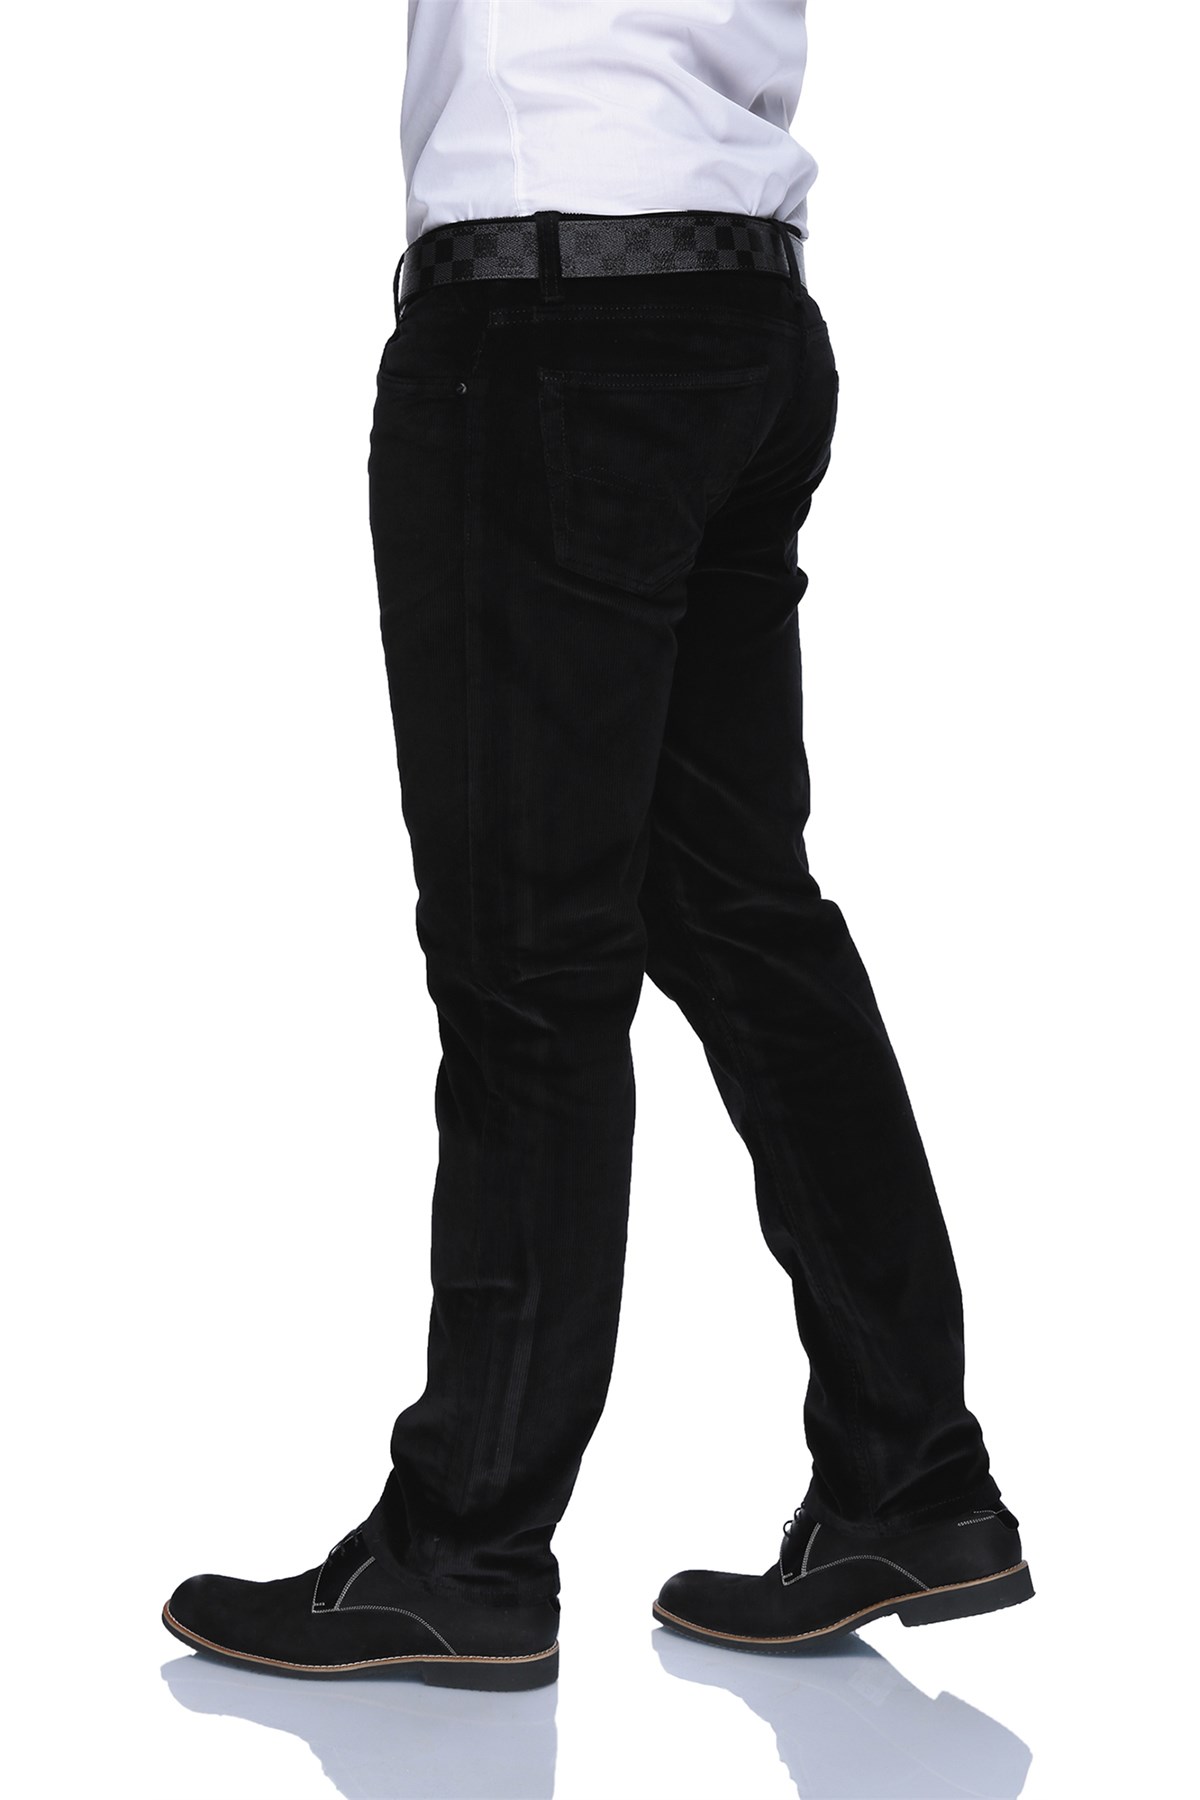 Buenza Dar Kesim Kadife Likralı Erkek Pantolon - Siyah